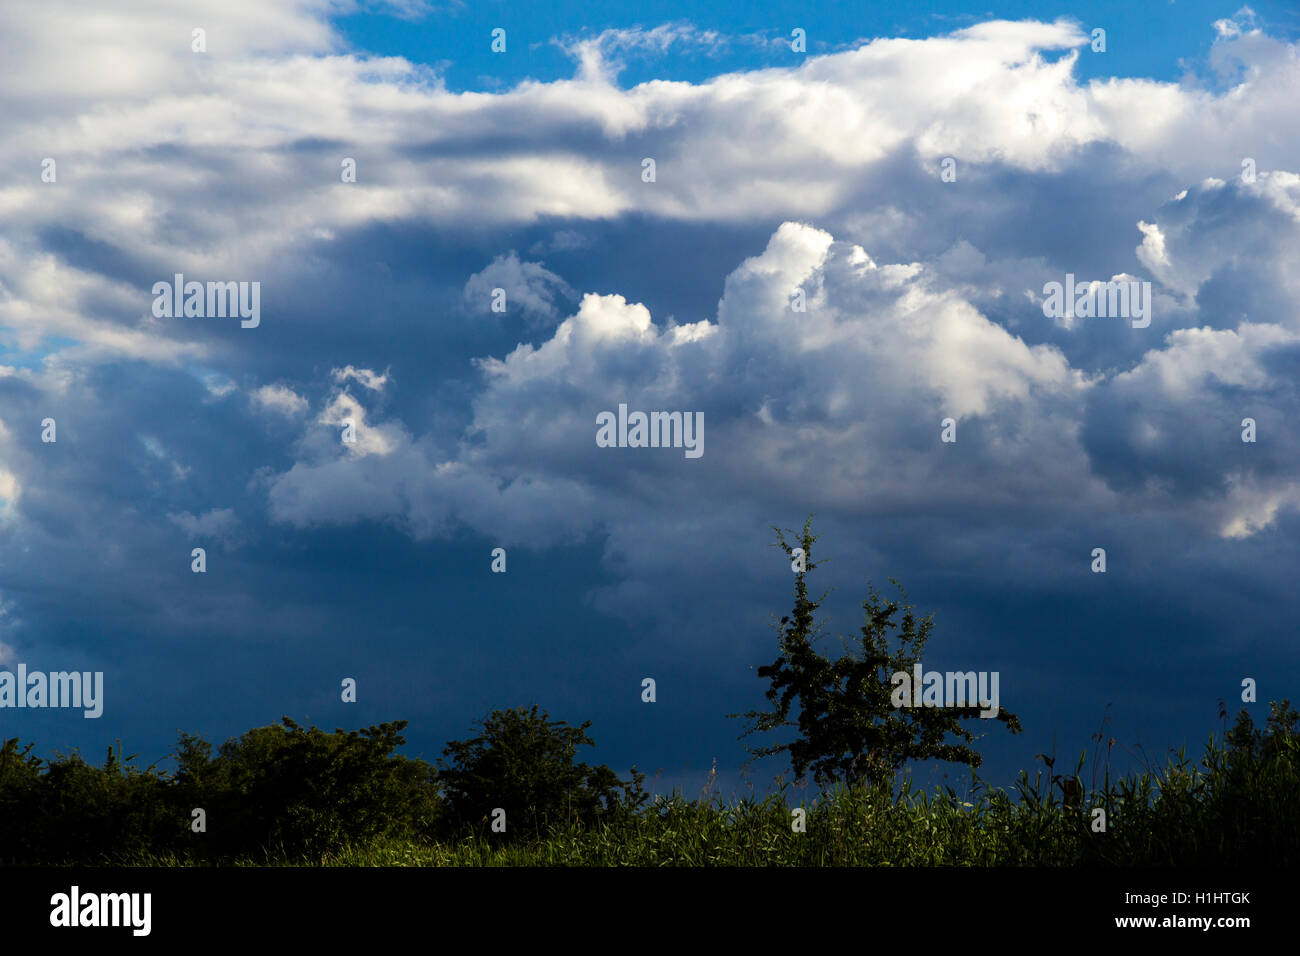 Drammatica sky con alcune piante nella parte anteriore Foto Stock